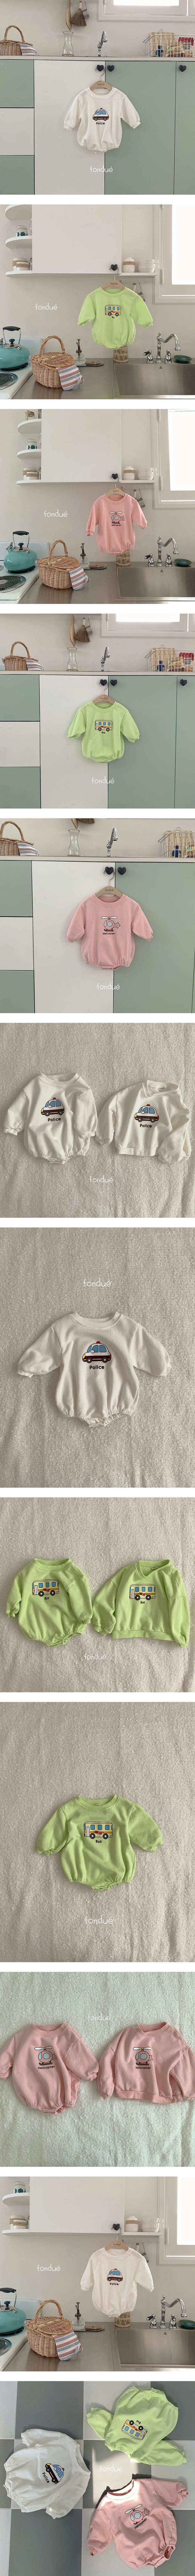 Fondue - Korean Baby Fashion - #babyboutiqueclothing - Toy Body Suit - 2